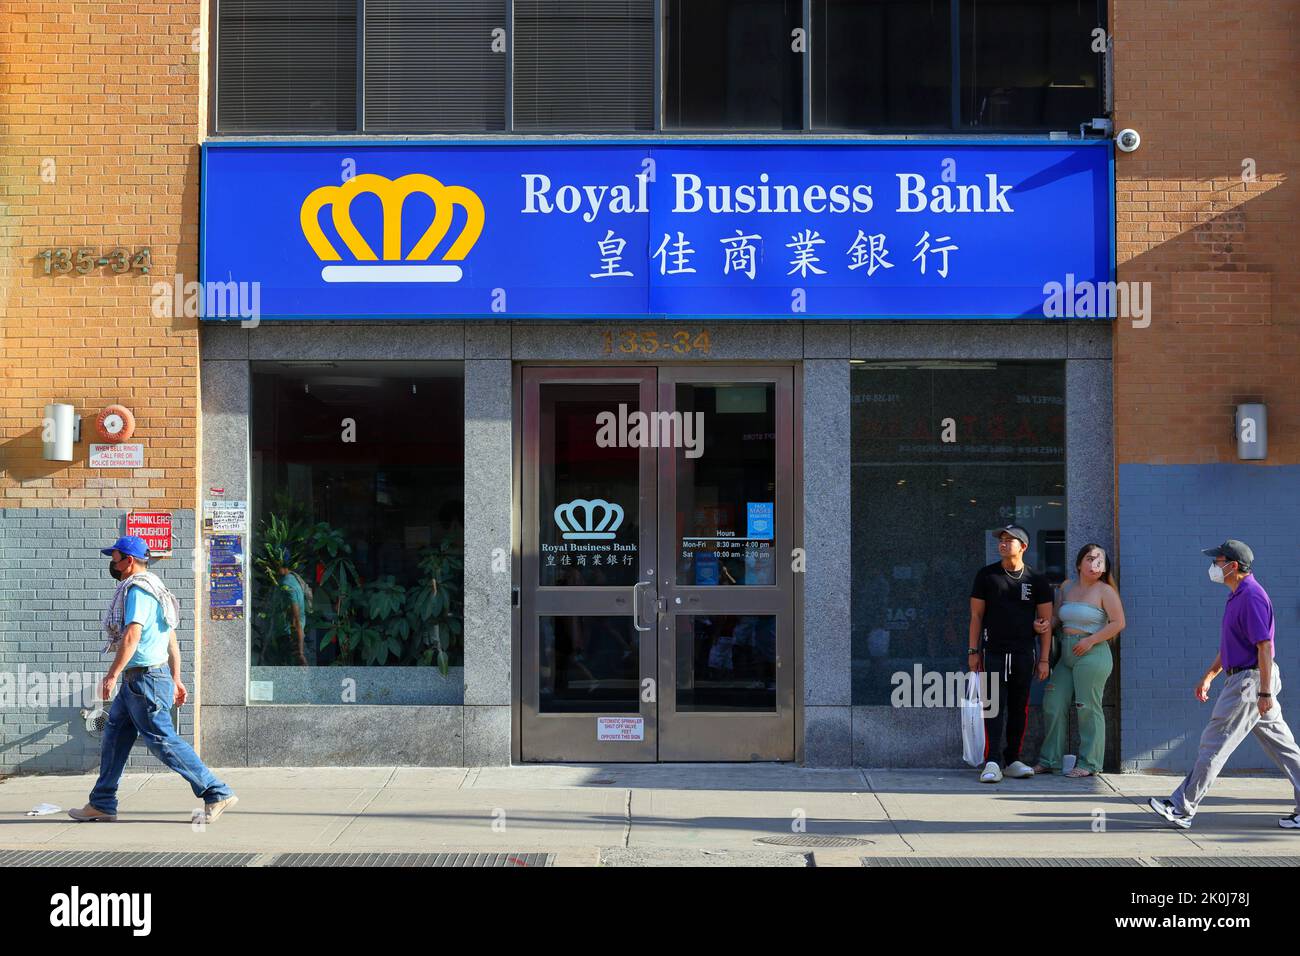 Royal Business Bank, 135-34 Roosevelt Ave, Queens, Nueva York. Foto del escaparate de Nueva York de un banco chino-americano en el centro de Flushing. Foto de stock